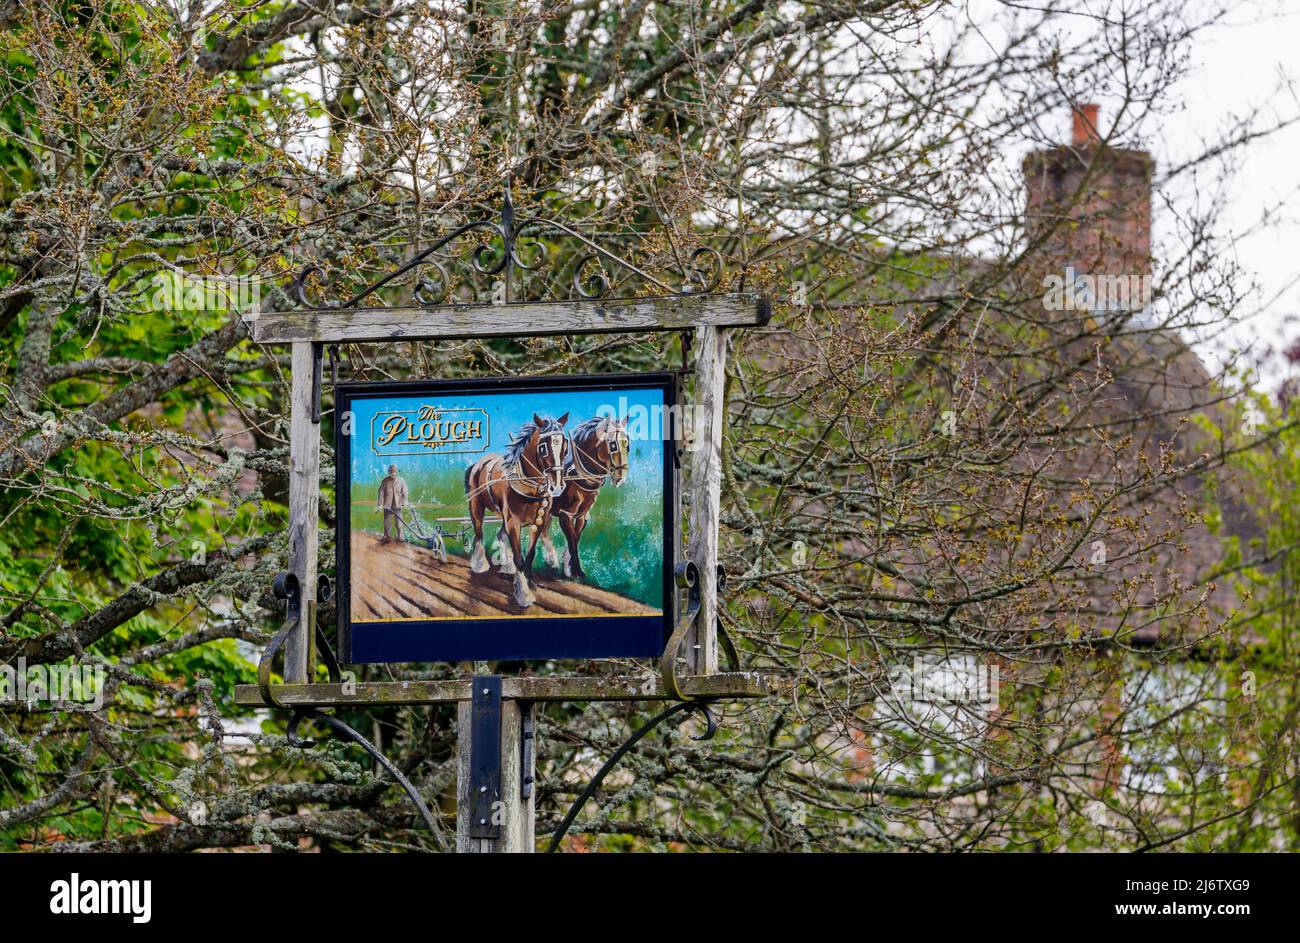 Traditionelles gemaltes Pub-Schild mit Pfahlmontage vor dem Plough, ein Pub Shalbourne, ein kleines, unberührtes Dorf im ländlichen Wiltshire, England Stockfoto